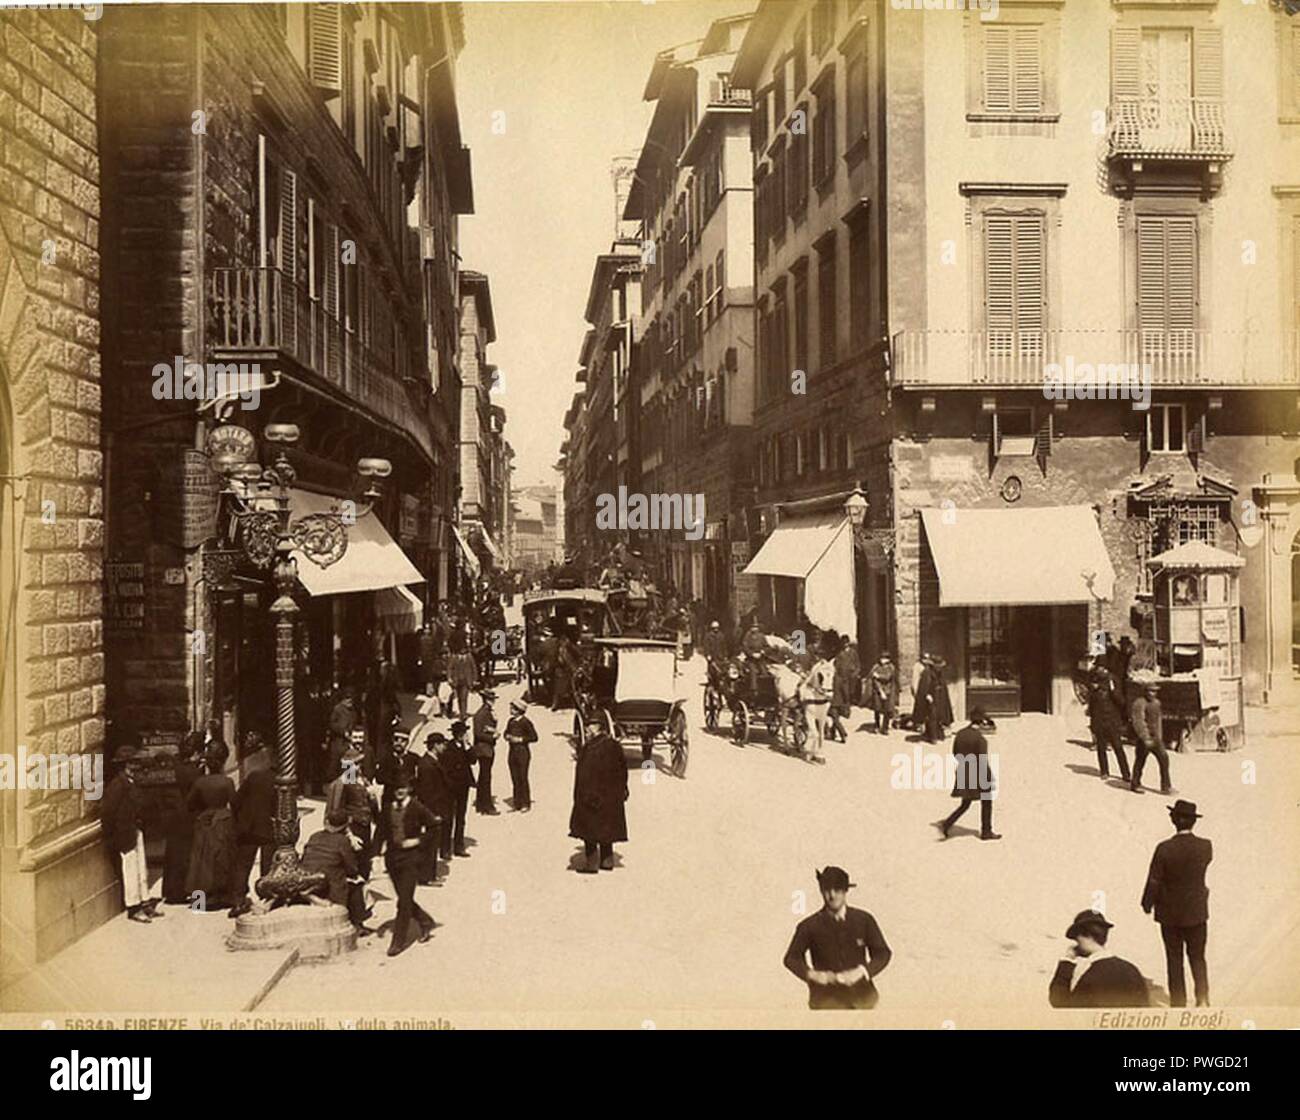 Brogi, GIACOMO (1822-1881) - n. 5634A - Firenze - Via de' Calzaiuoli - Veduta animata. Foto de stock